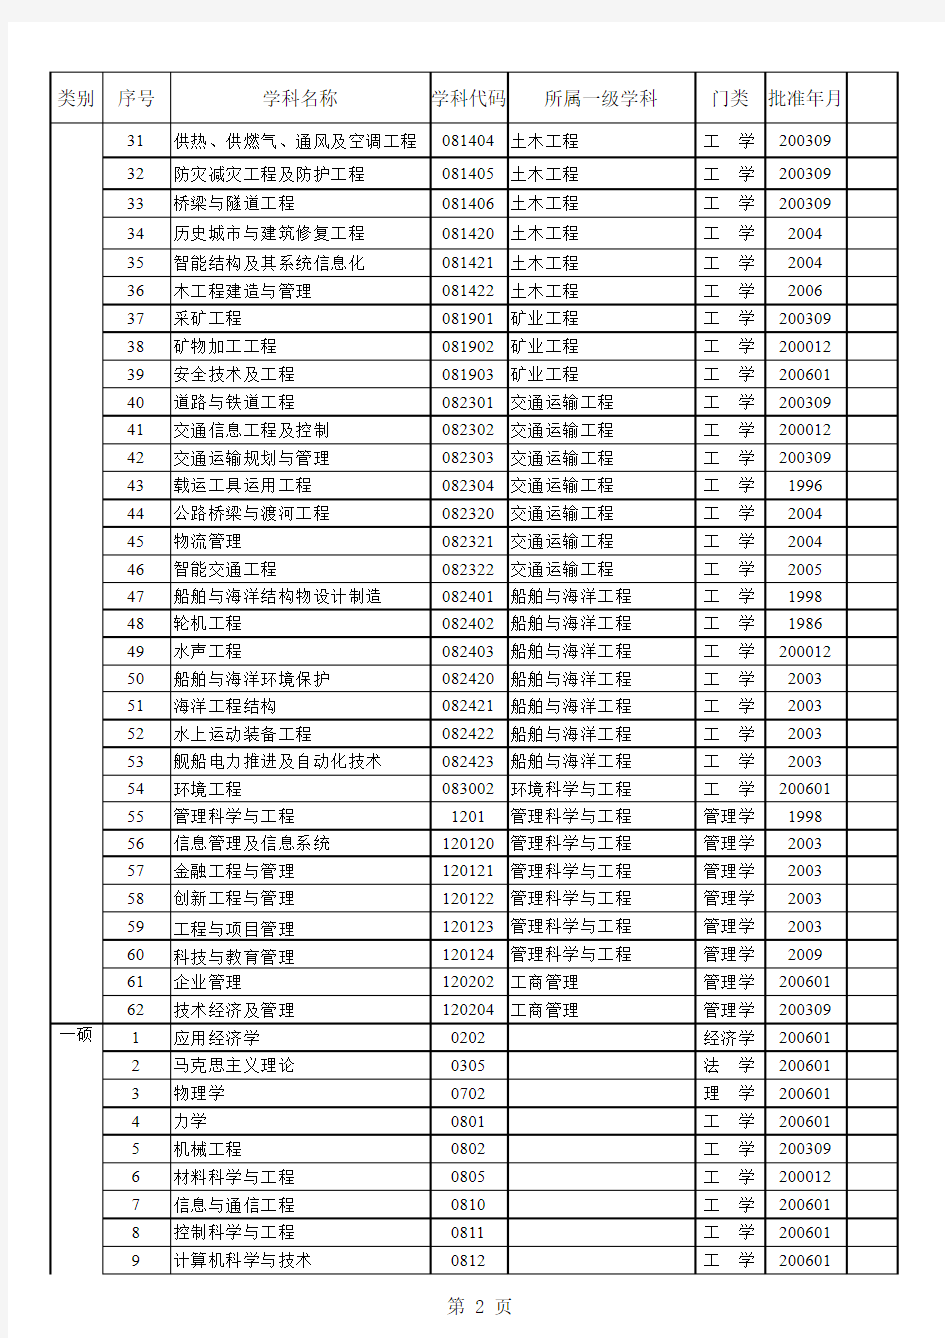 武汉理工大学博士、硕士学位授权点一览表(2009年)